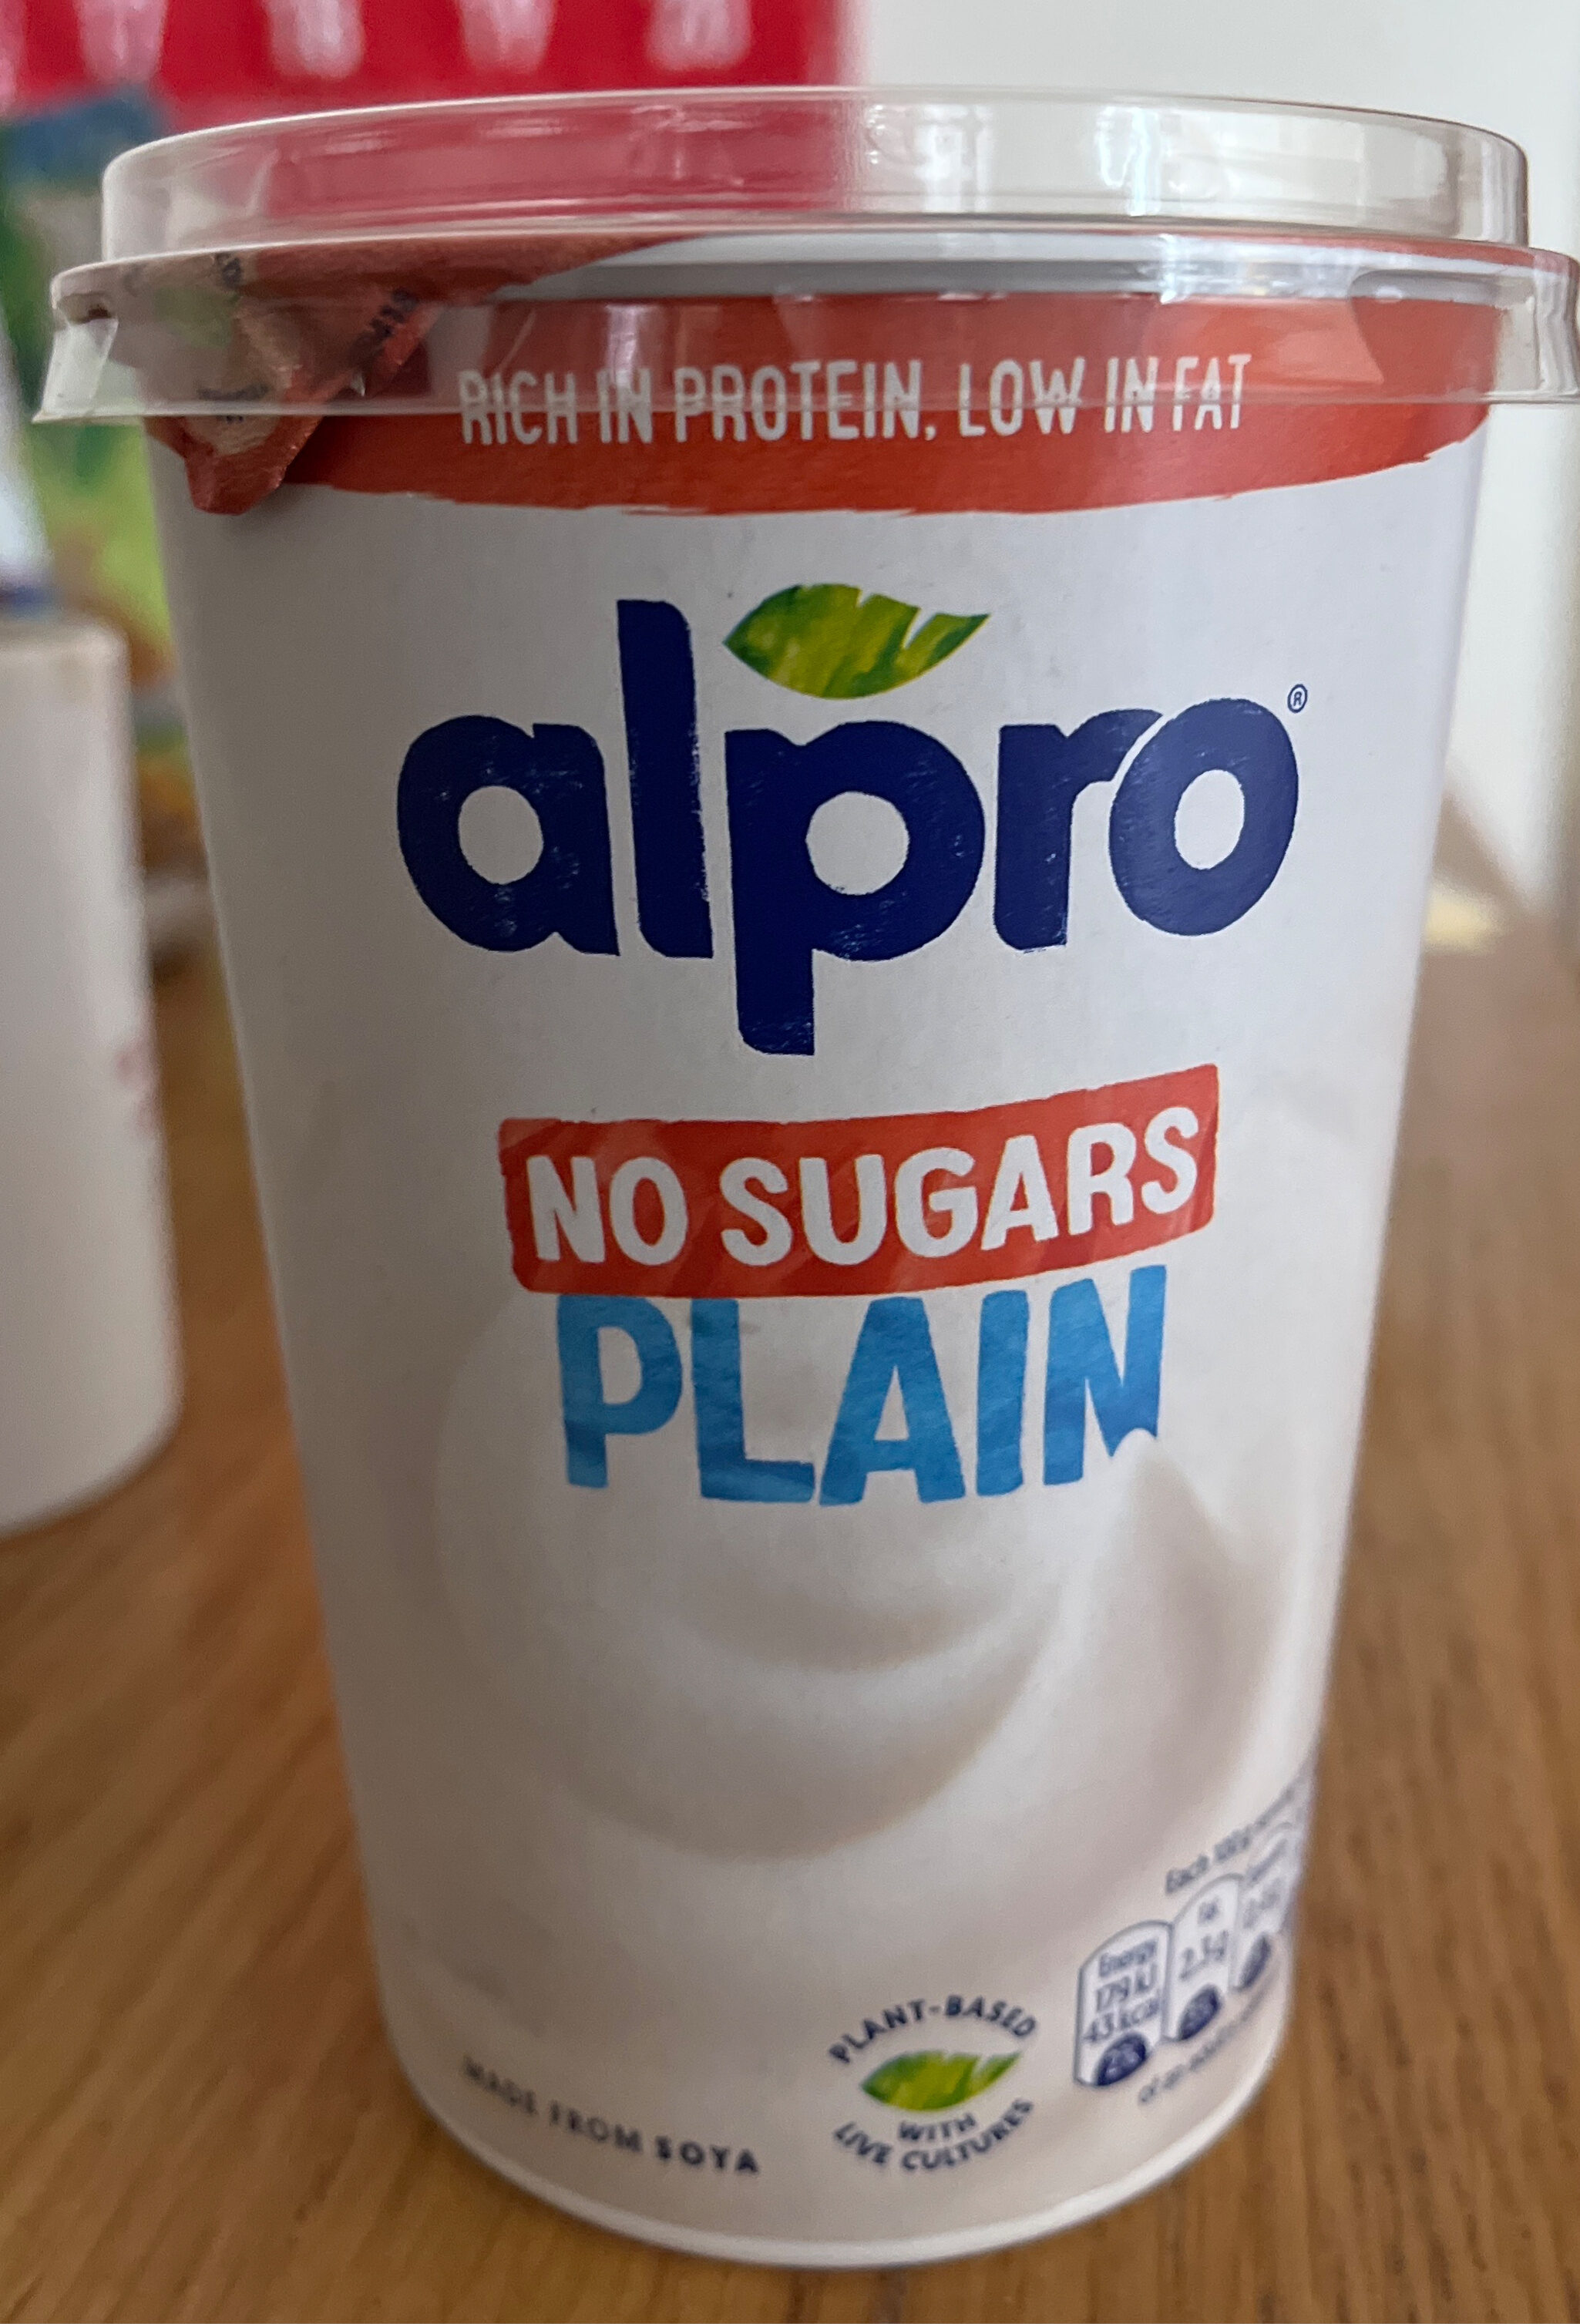 no sugars plain - Product